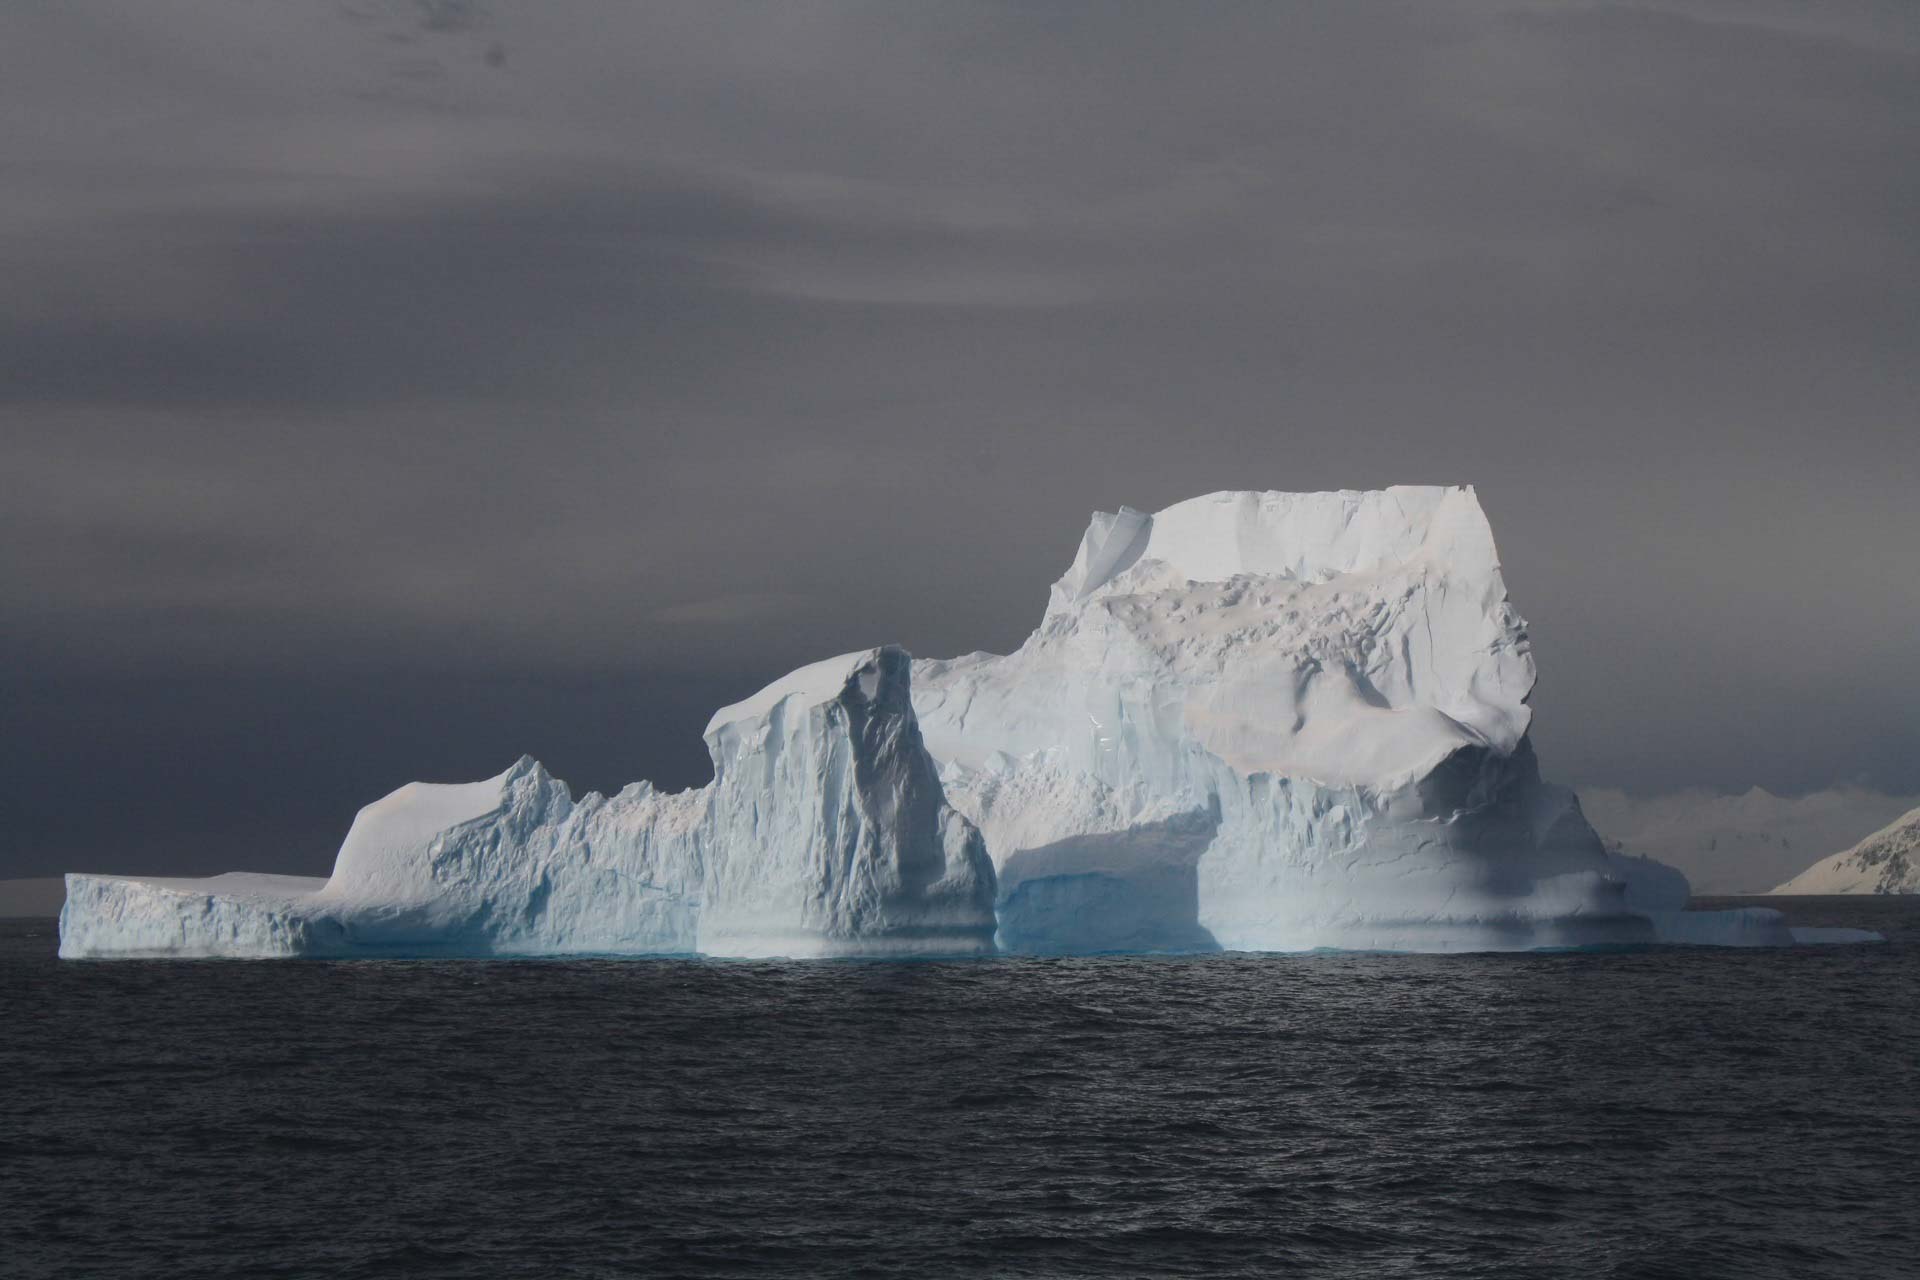 Iceberg in the Antarctica region